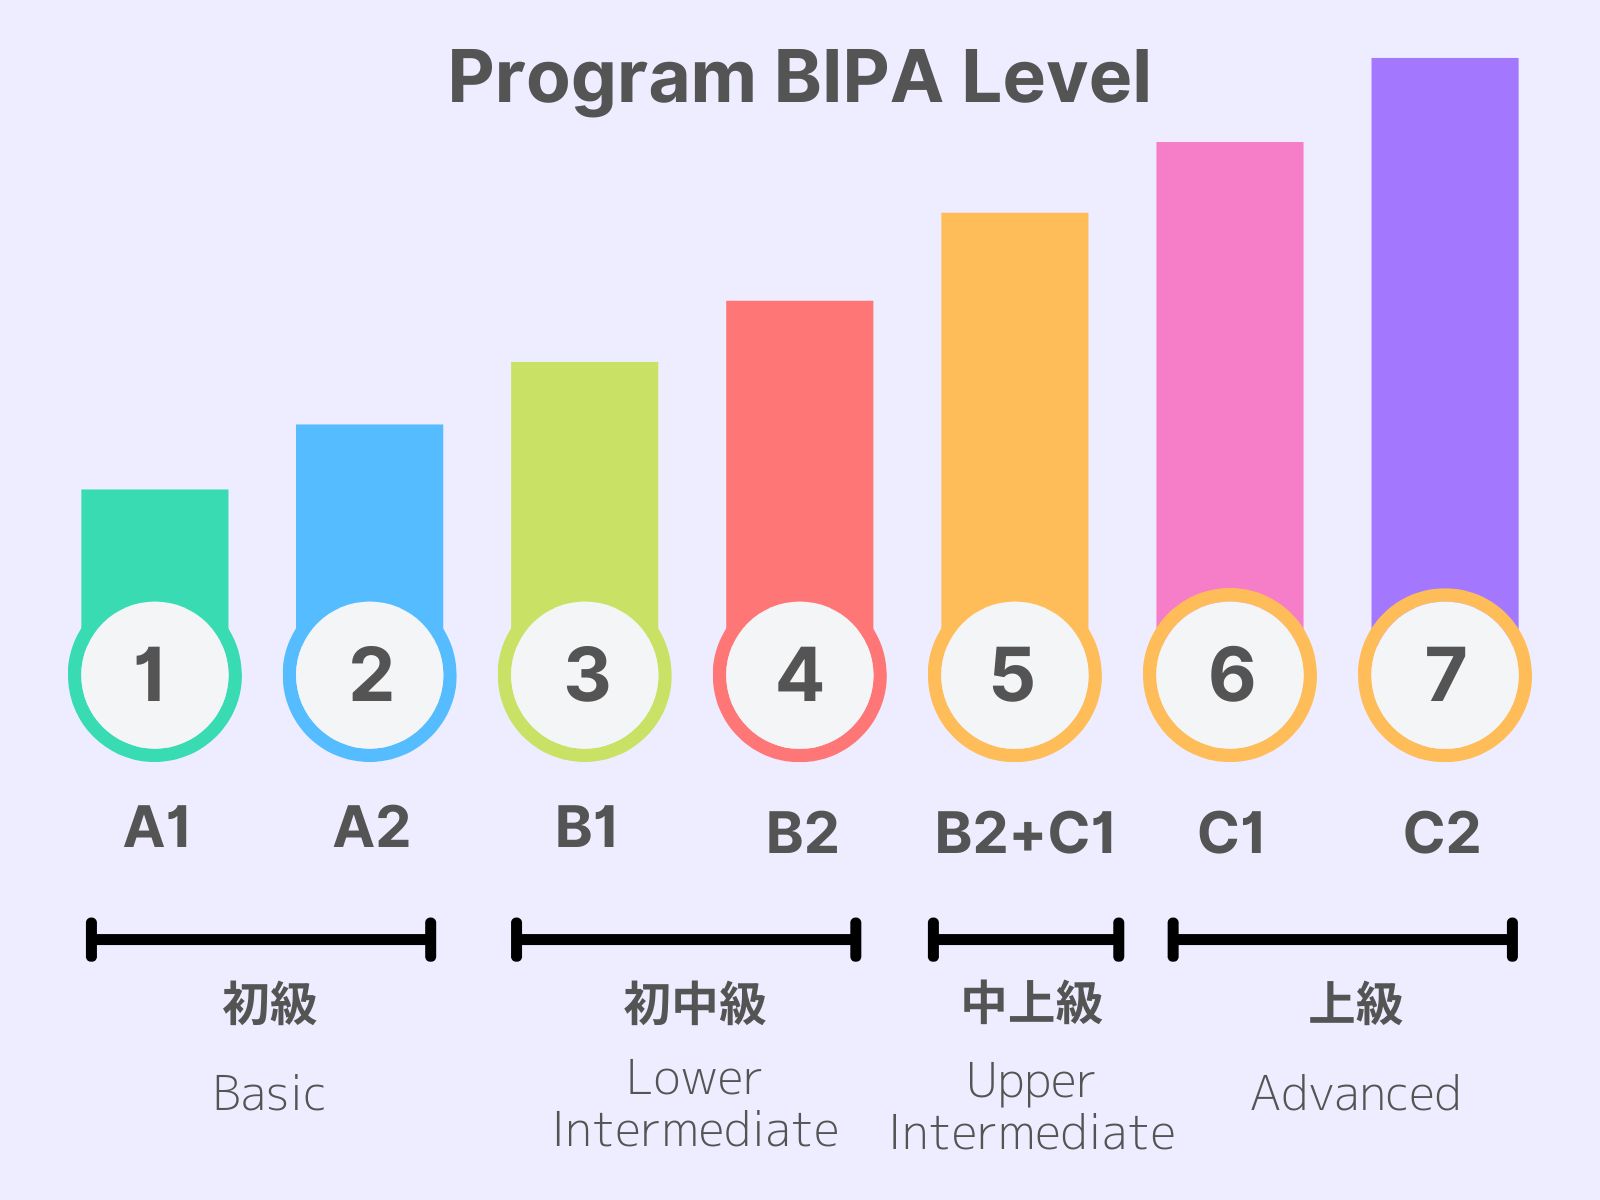 Program BIPA bahasa level tingkat